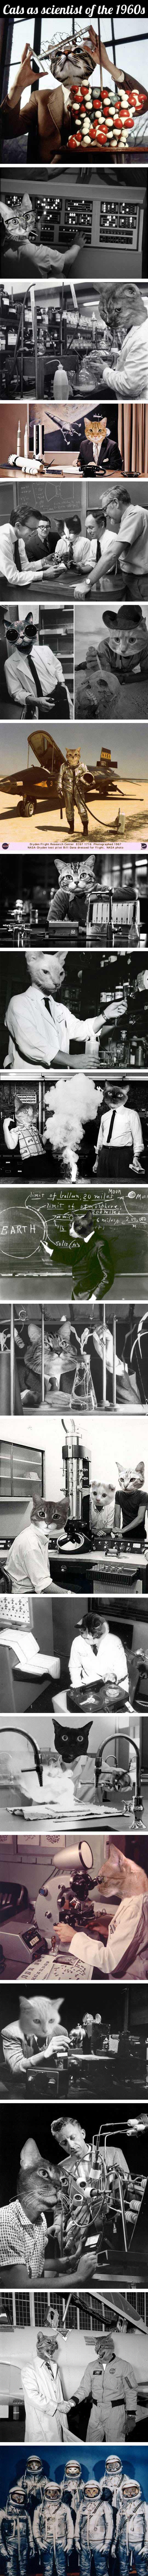 1960's cat scientists